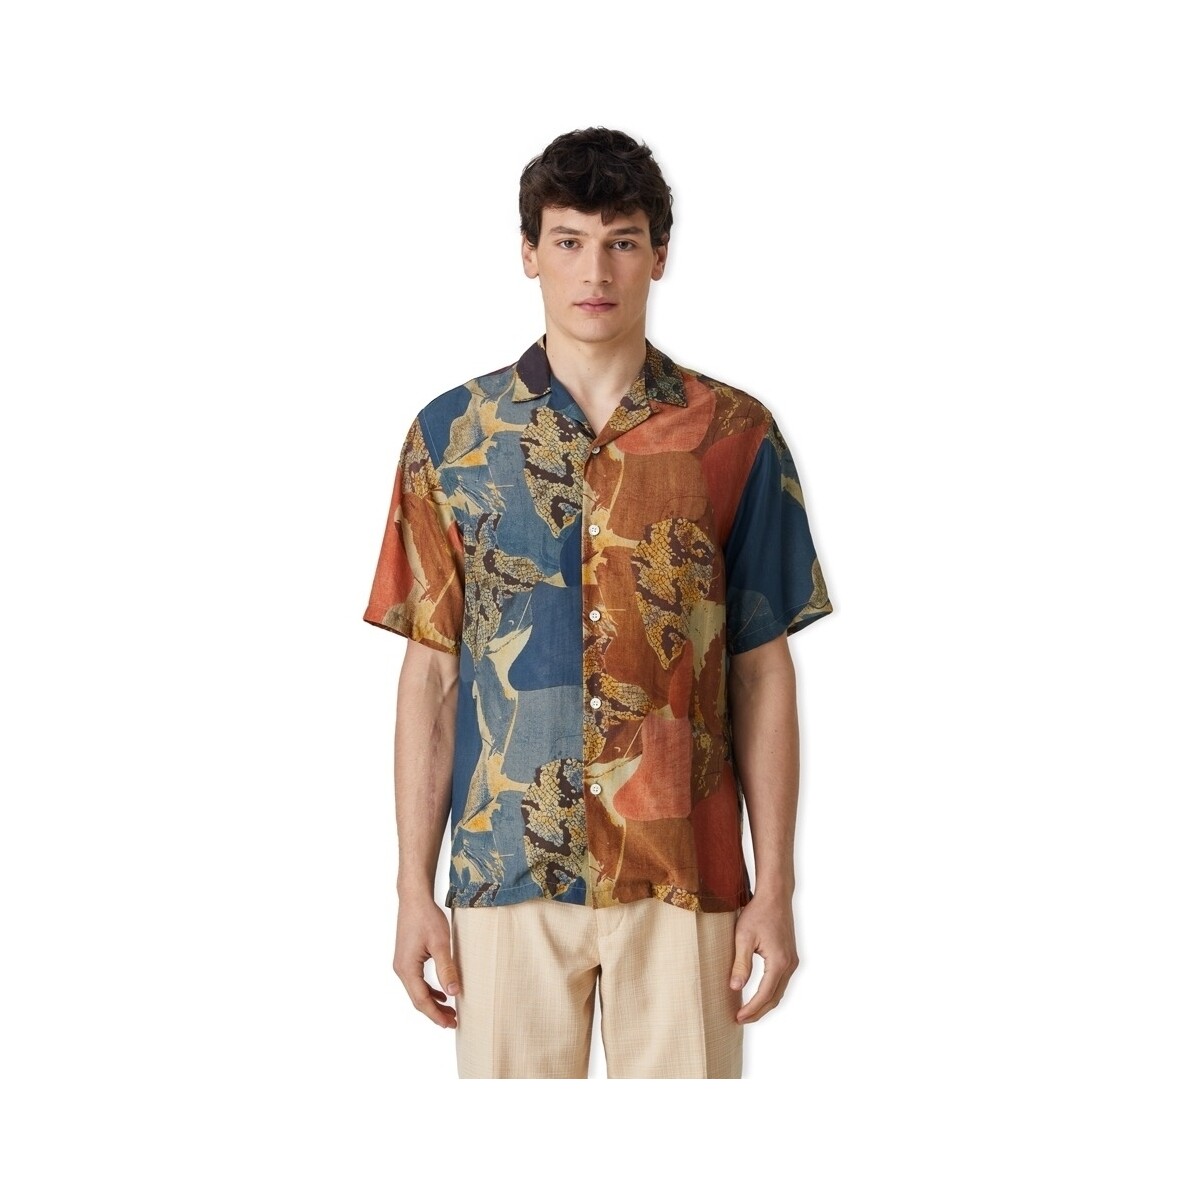 Vêtements Homme Chemises manches longues Portuguese Flannel Mastic Shirt - Patchwork Multicolore